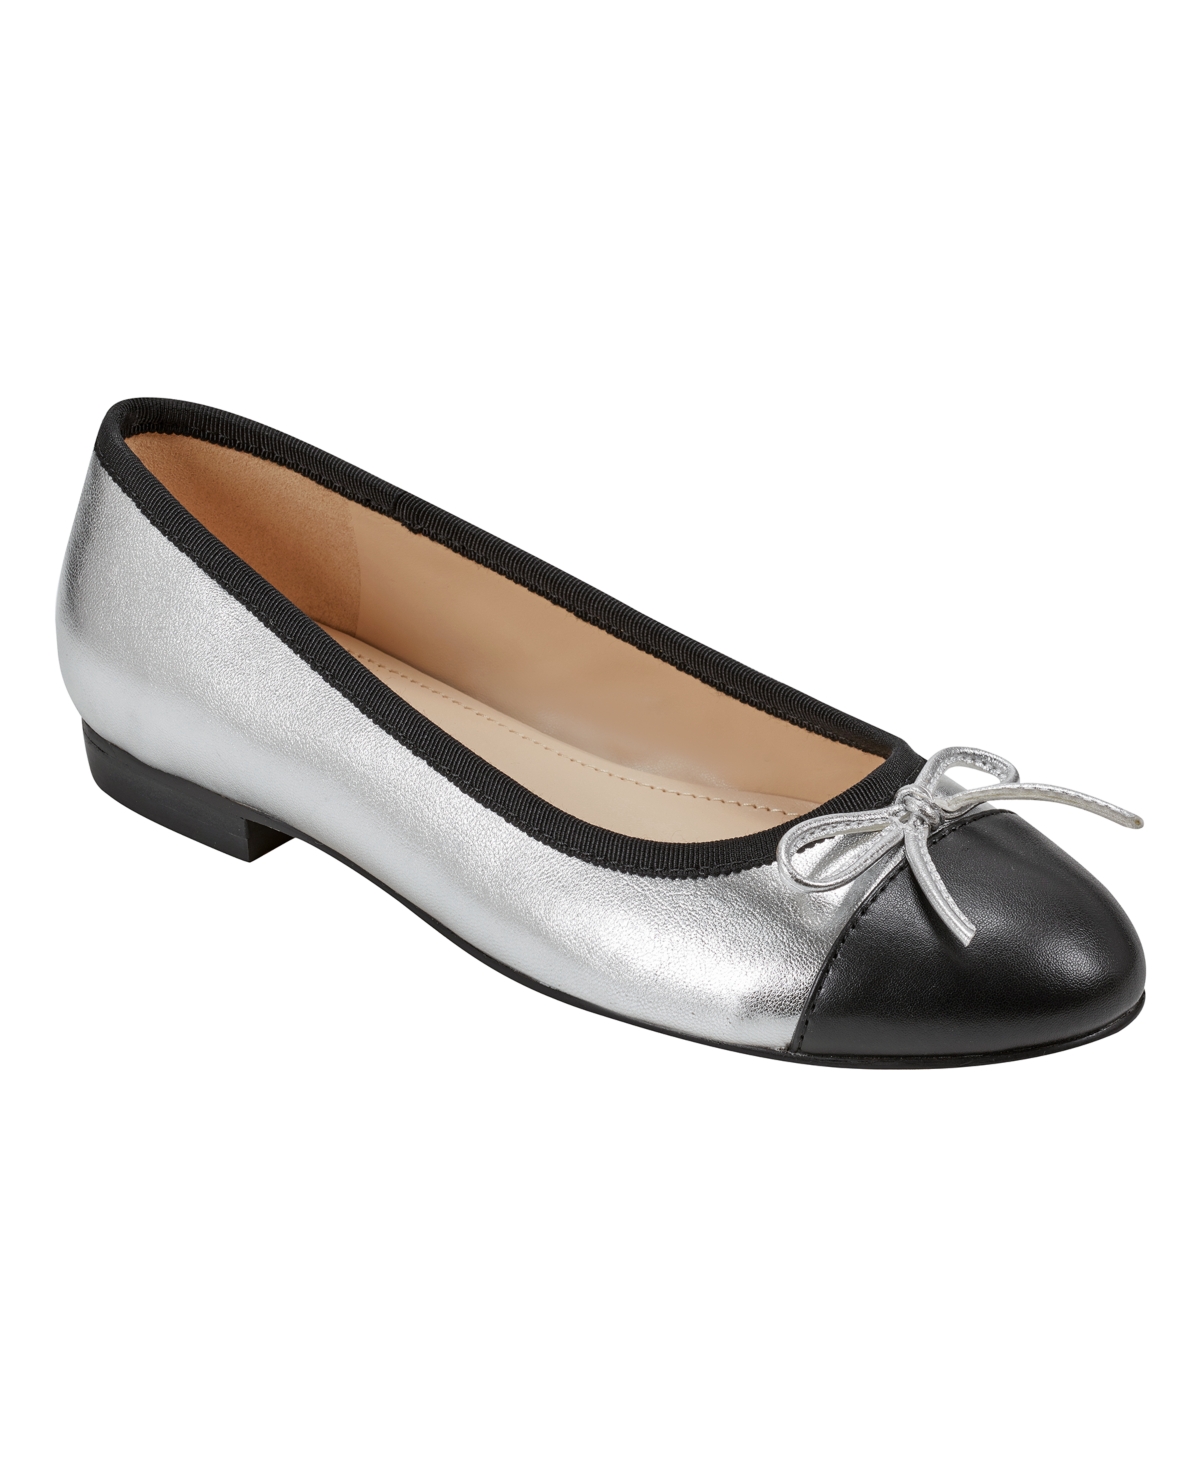 Women's Jodi Slip-On Dress Pointy Toe Ballet Flats - Silver